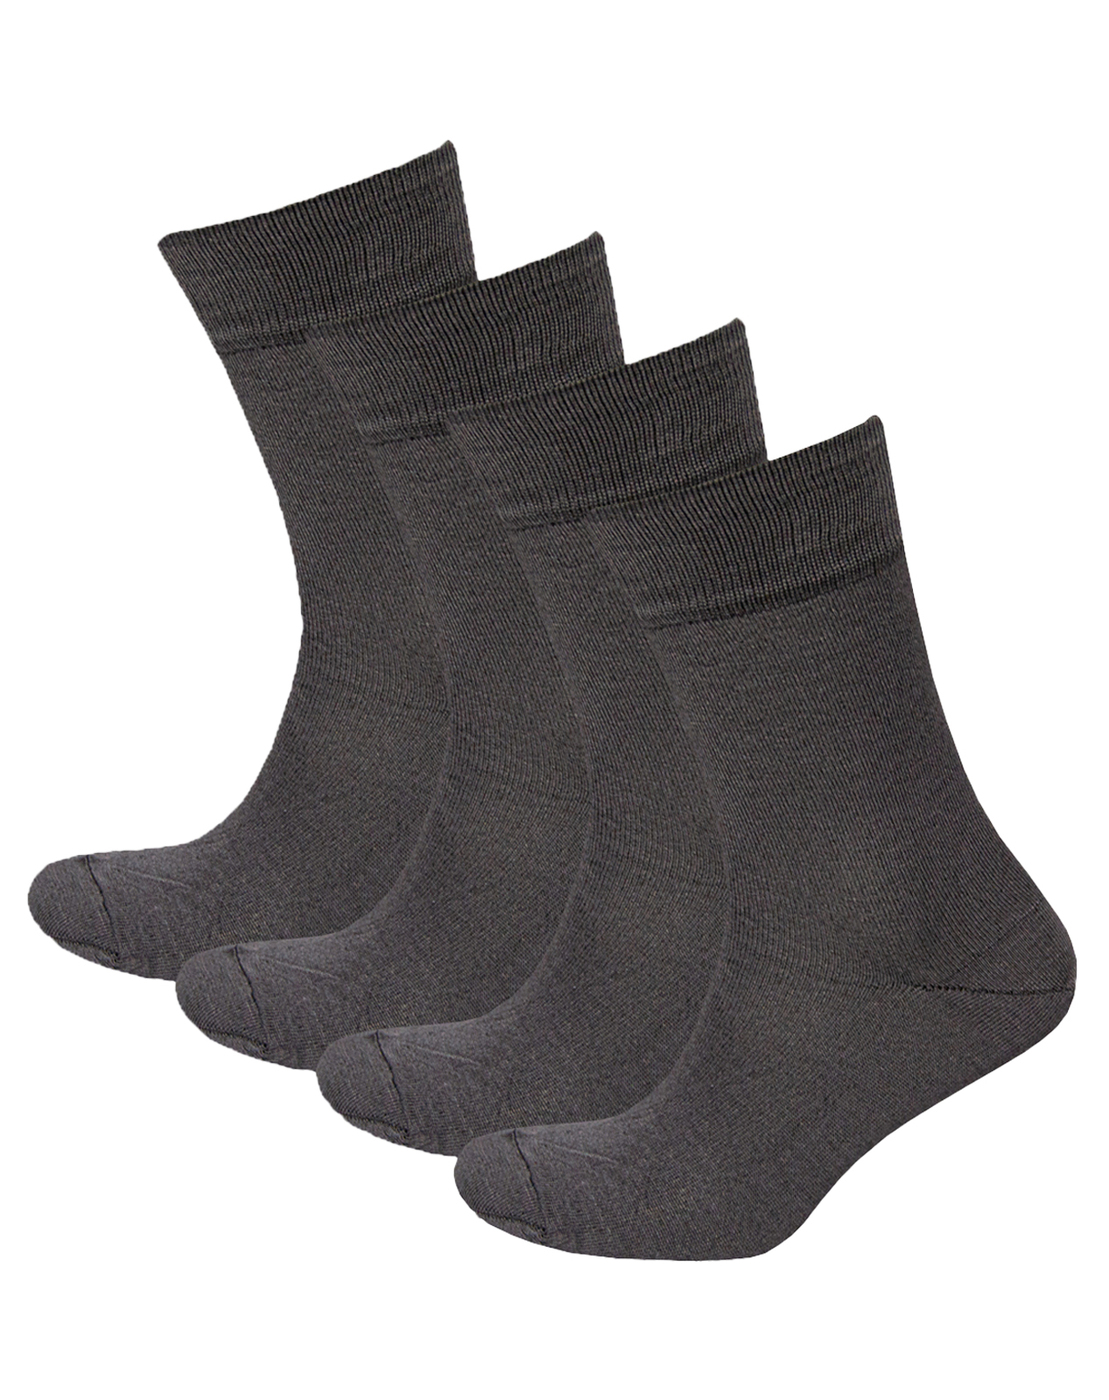 Комплект носков мужских Status Классические из хлопка серых 29, 4 пары